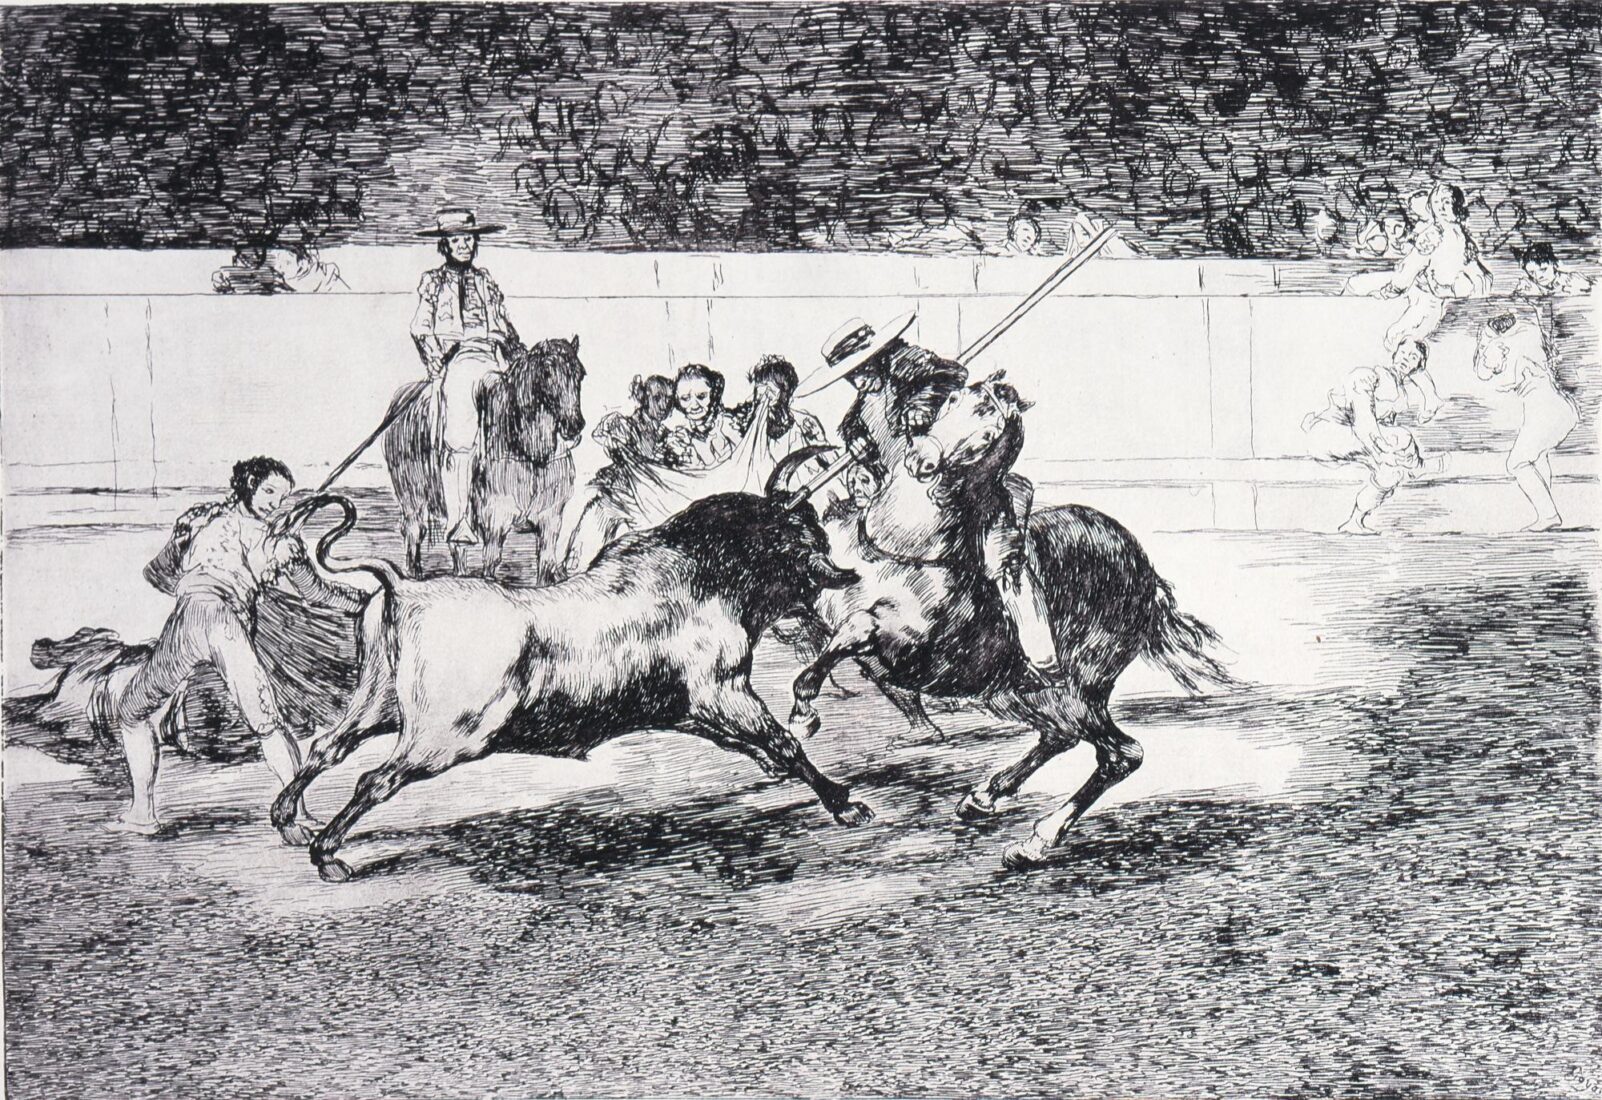 Ο ρωμαλέος Ρεντόν μπήγει το ακόντιο σε έναν ταύρο, χτύπημα από το οποίο και πέθανε στην αρένα της Μαδρίτης - Goya y Lucientes Francisco